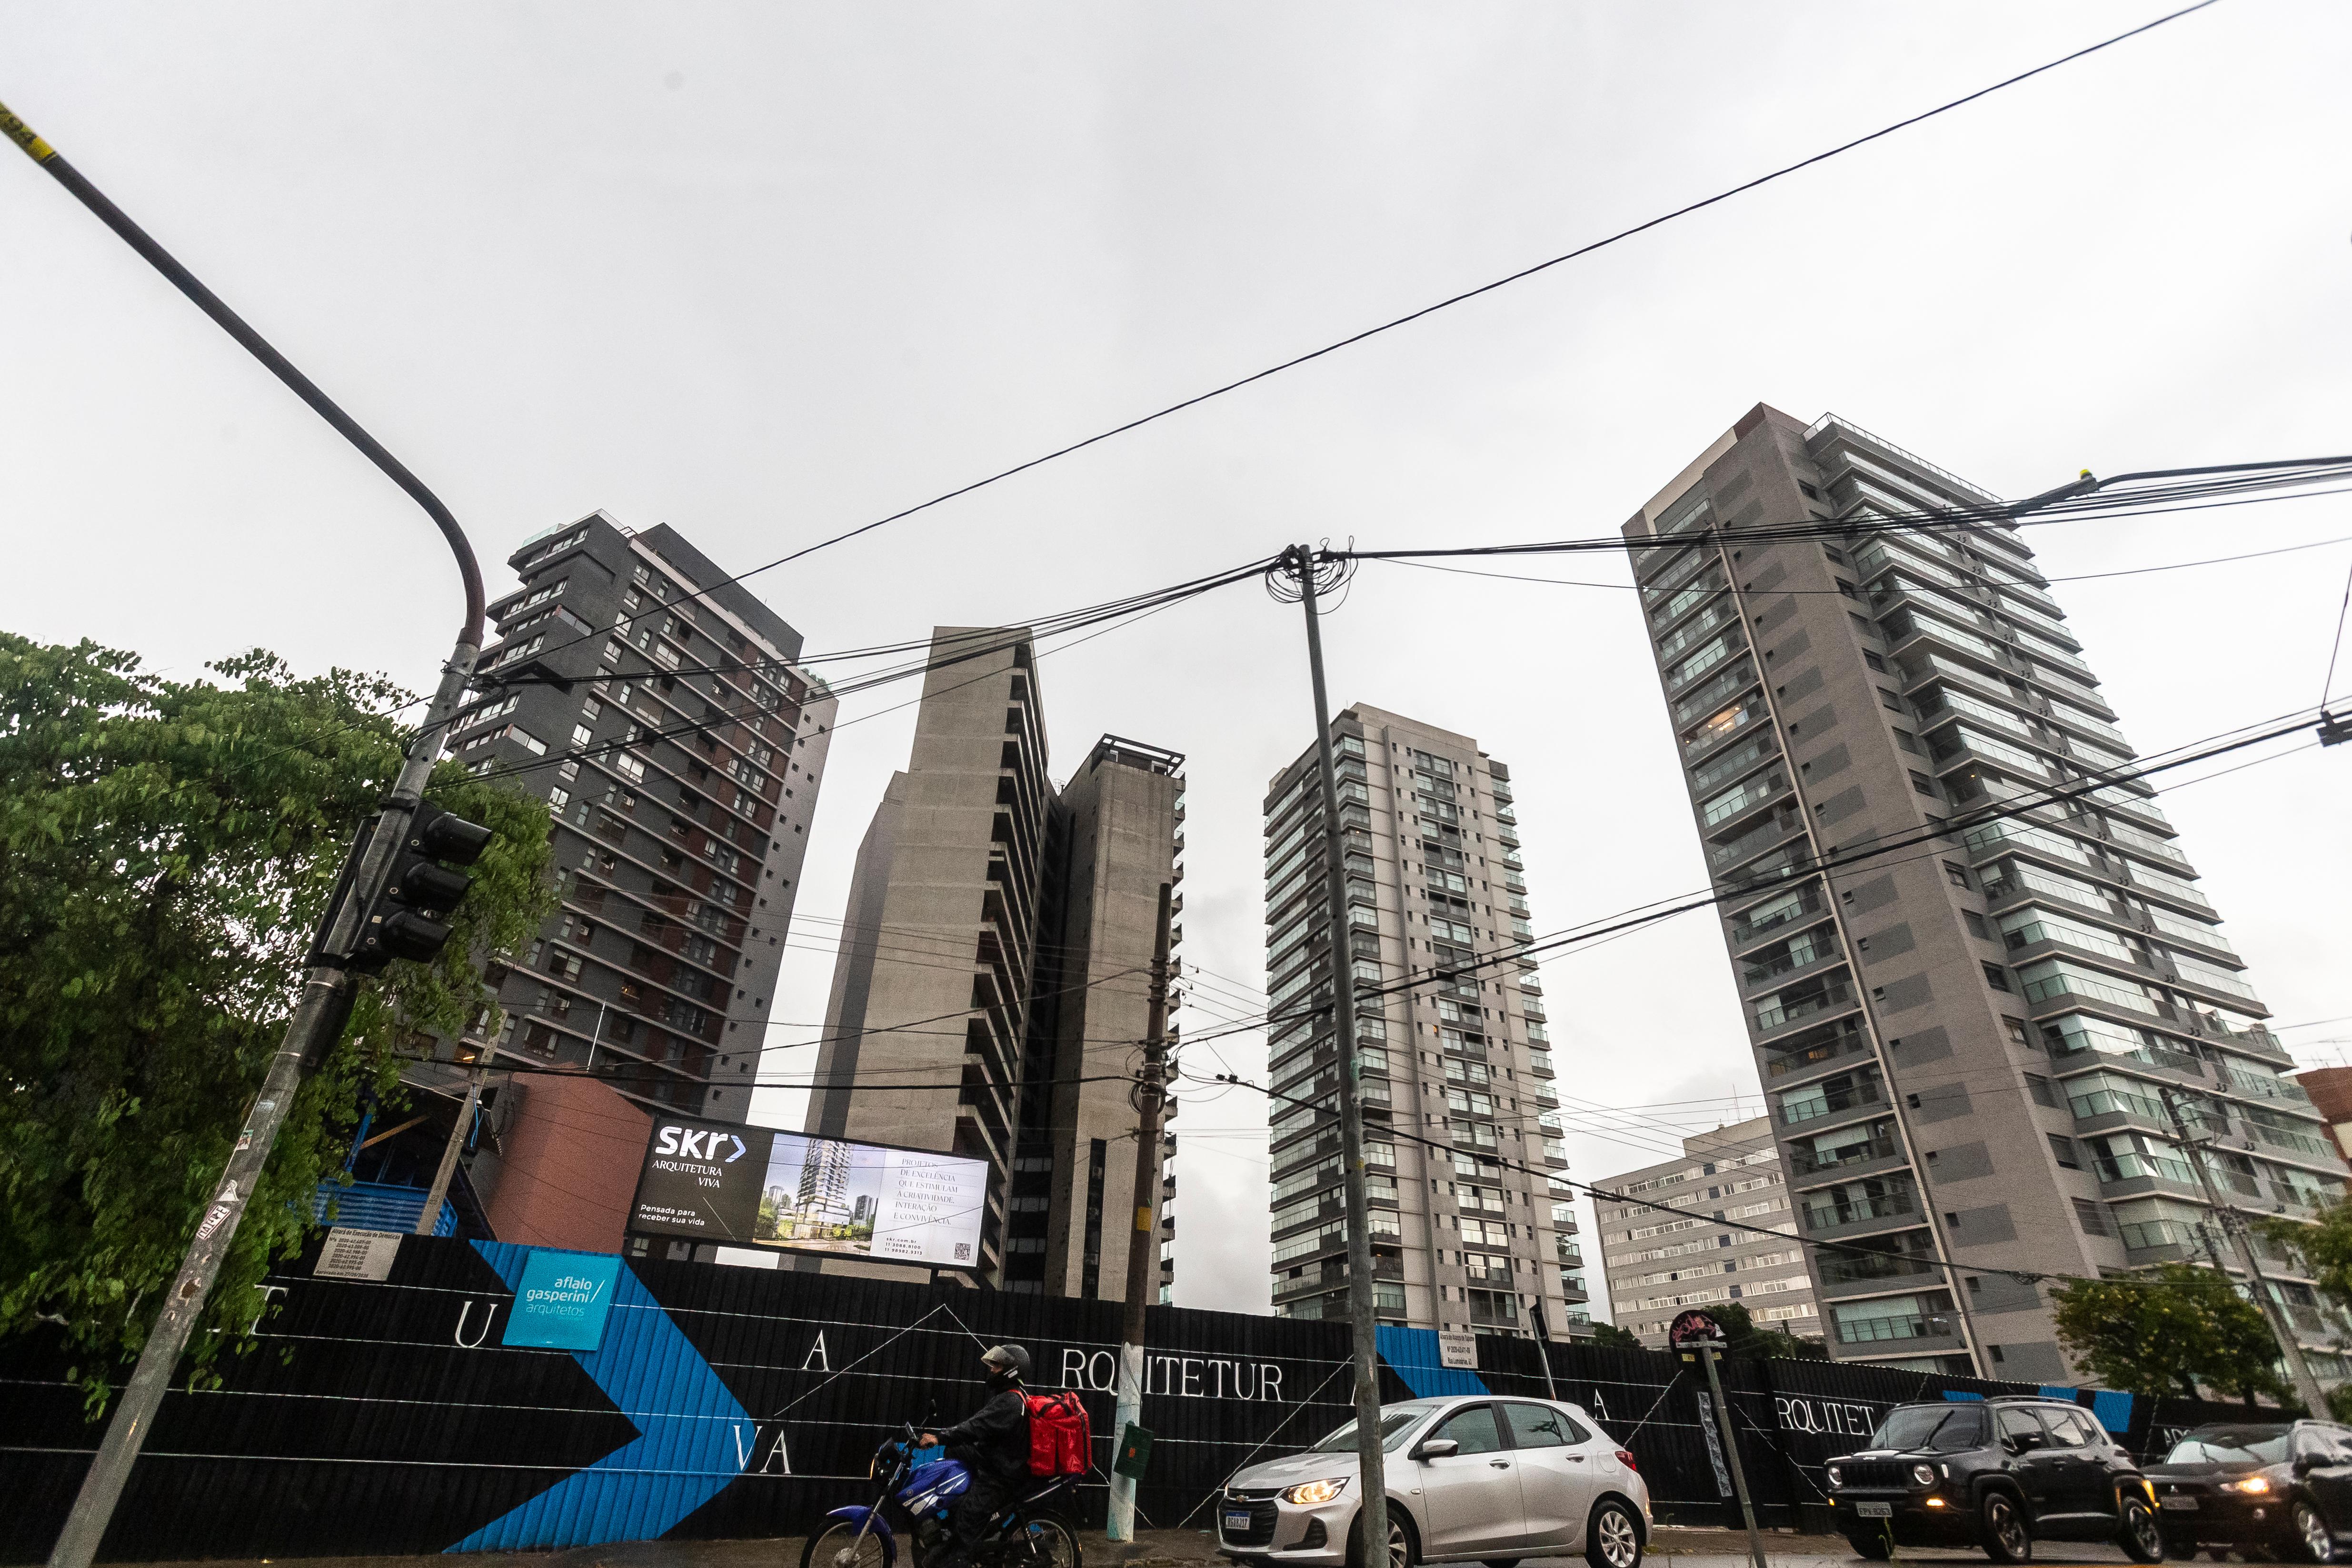 Estacionamento clandestino de caminhões segue funcionando em terreno da  Prefeitura de São Paulo, São Paulo